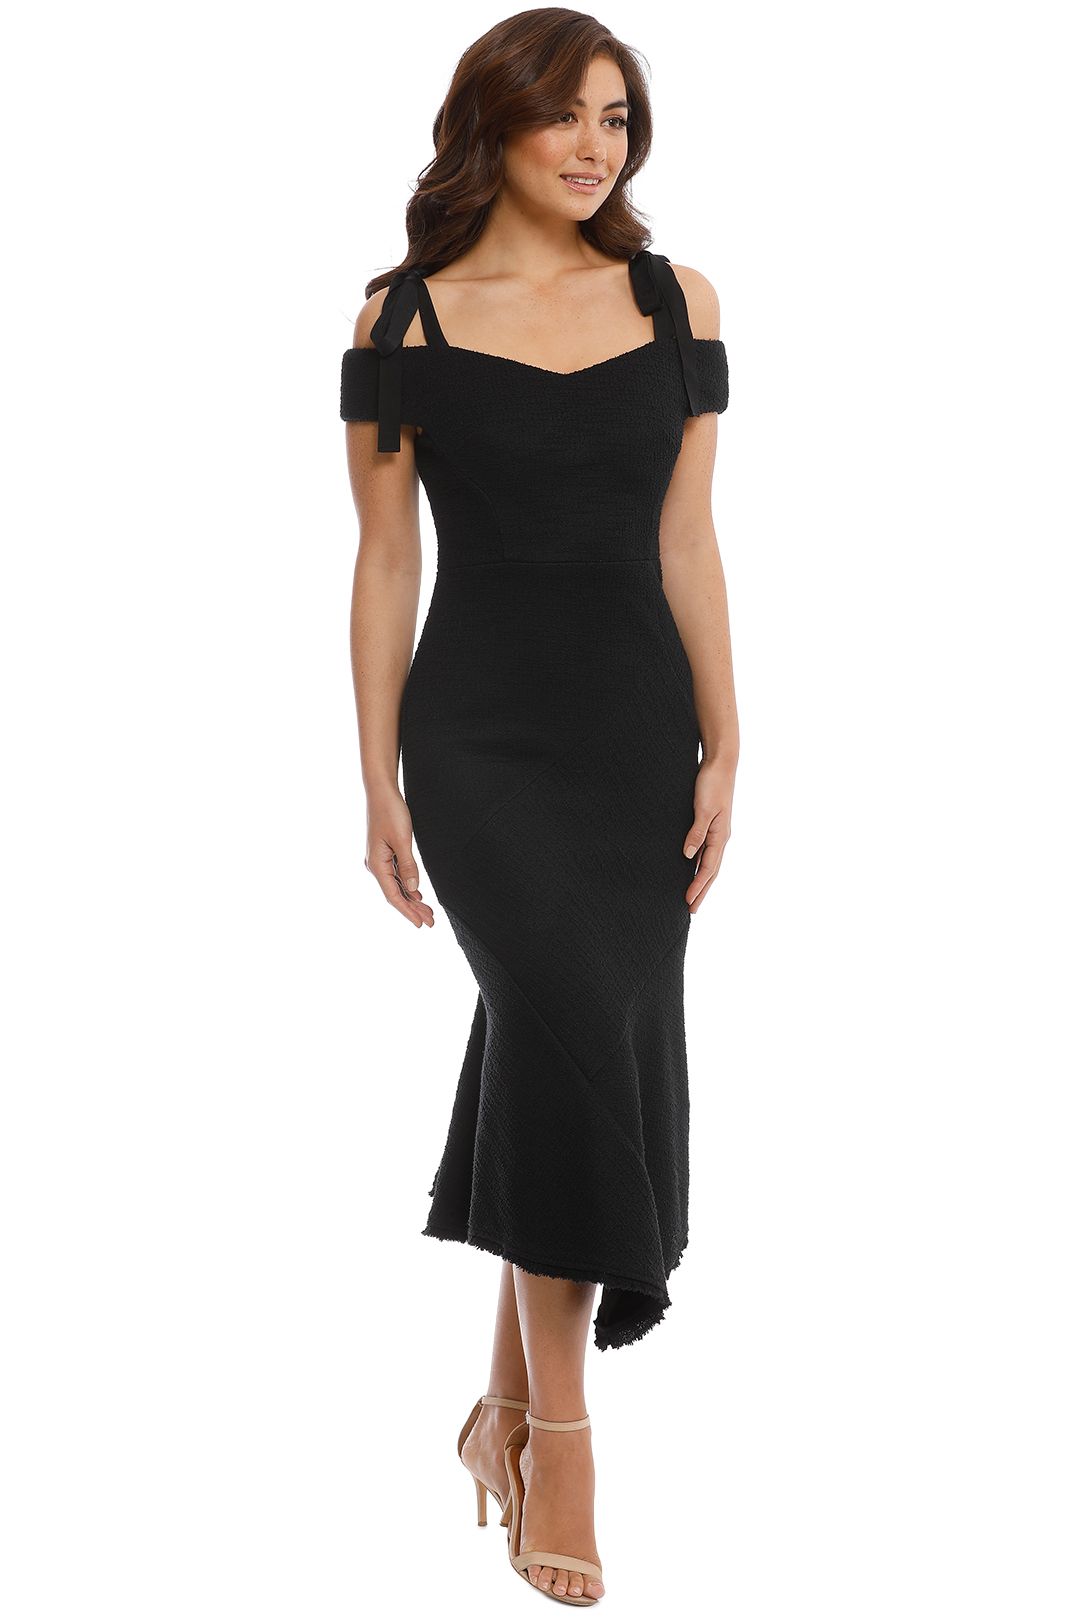 Rebecca Vallance - Cardinale Off Shoulder Dress - Black - Side